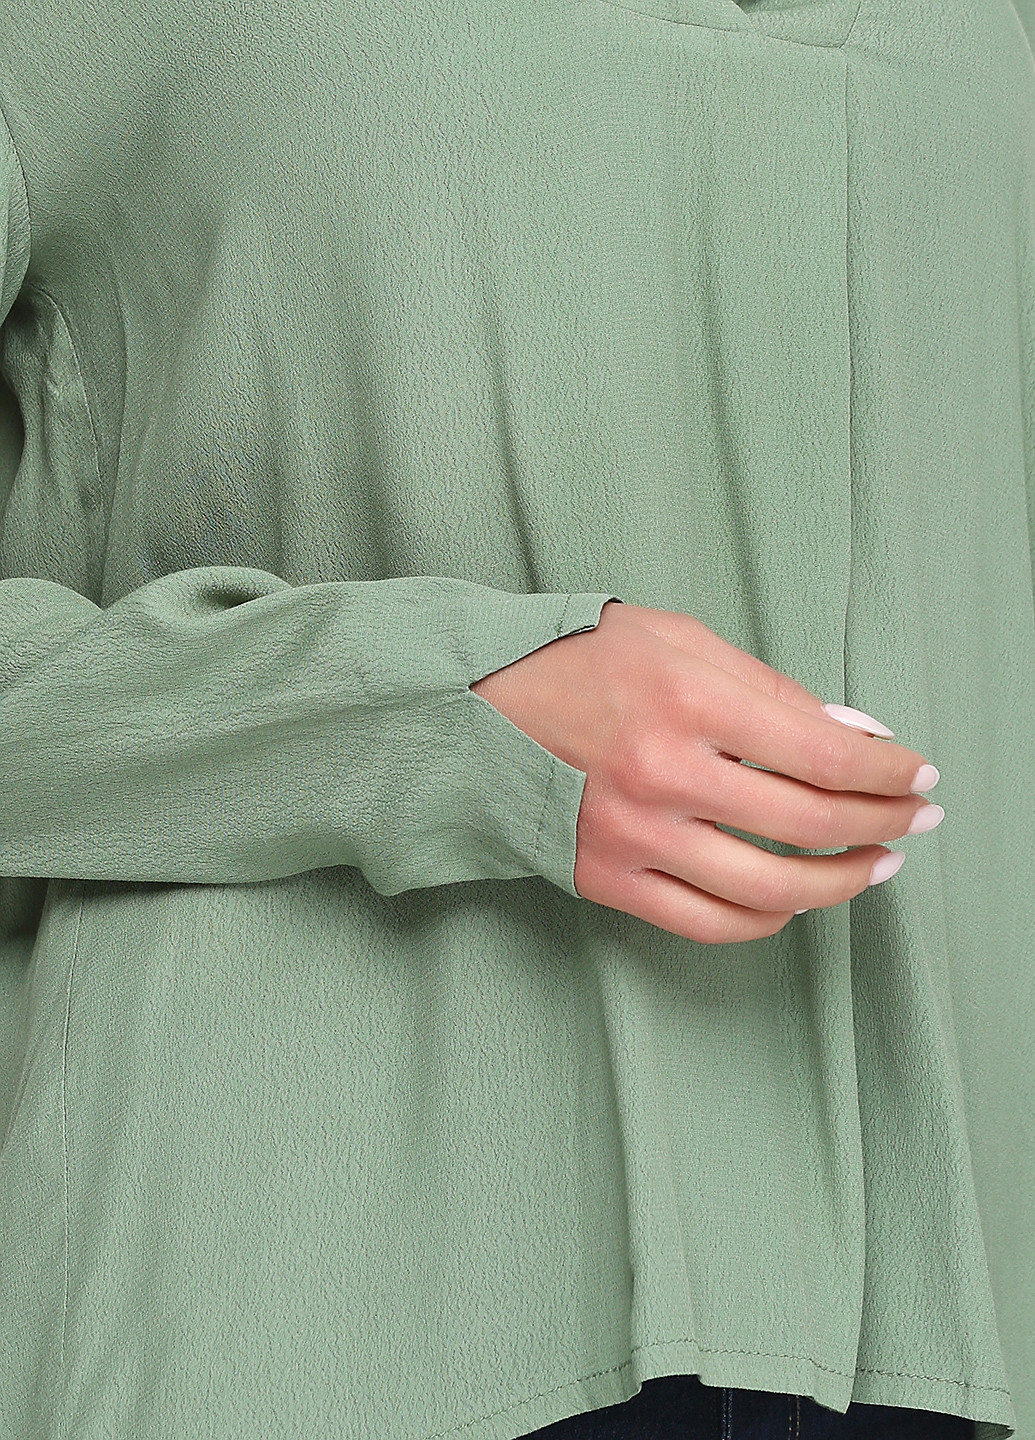 Бледно-зелёная блуза Minus